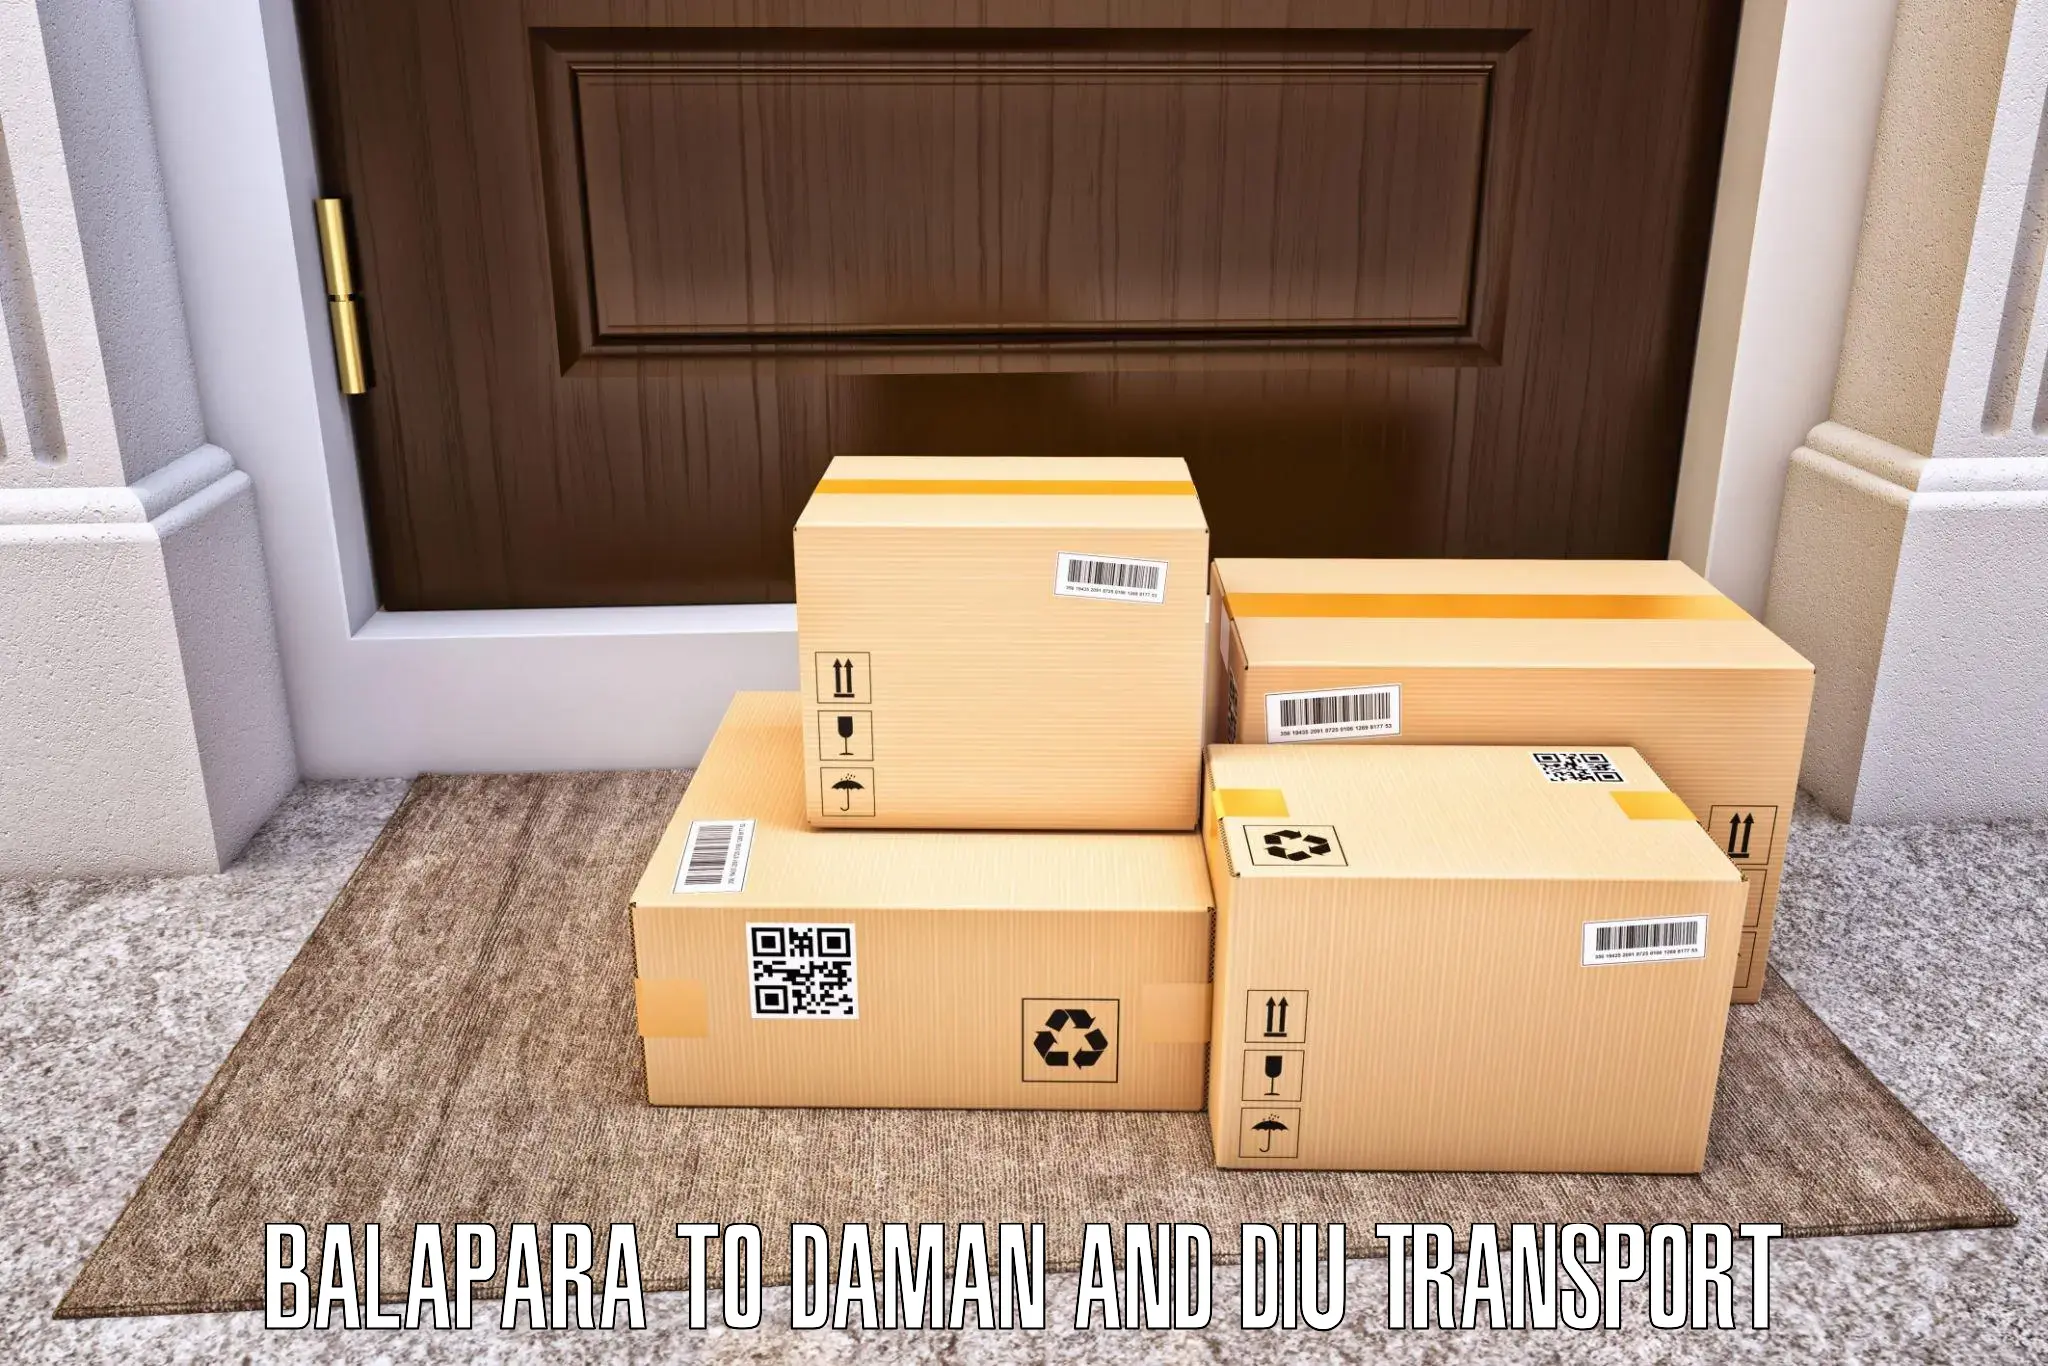 Container transport service Balapara to Daman and Diu